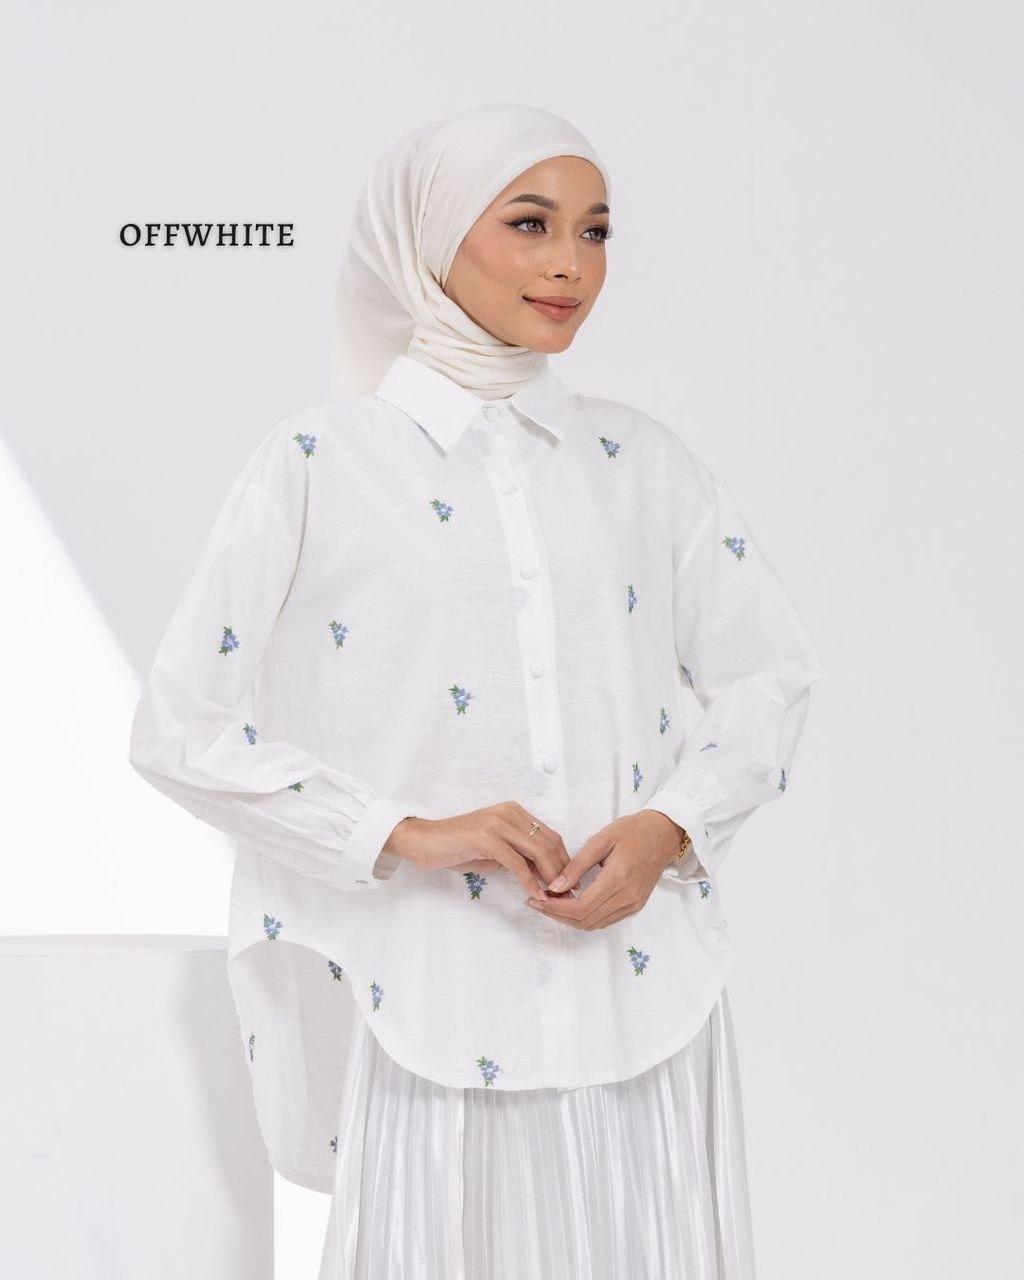 haura-wear-scarlett-kemeja-lengan panjang-kemeja labuh-baju labuh-tunic-kaftan-midi-dress-blouse-shirt-long-sleeve-baju-muslimah-baju-perempuan-shirt-blouse-baju (3)